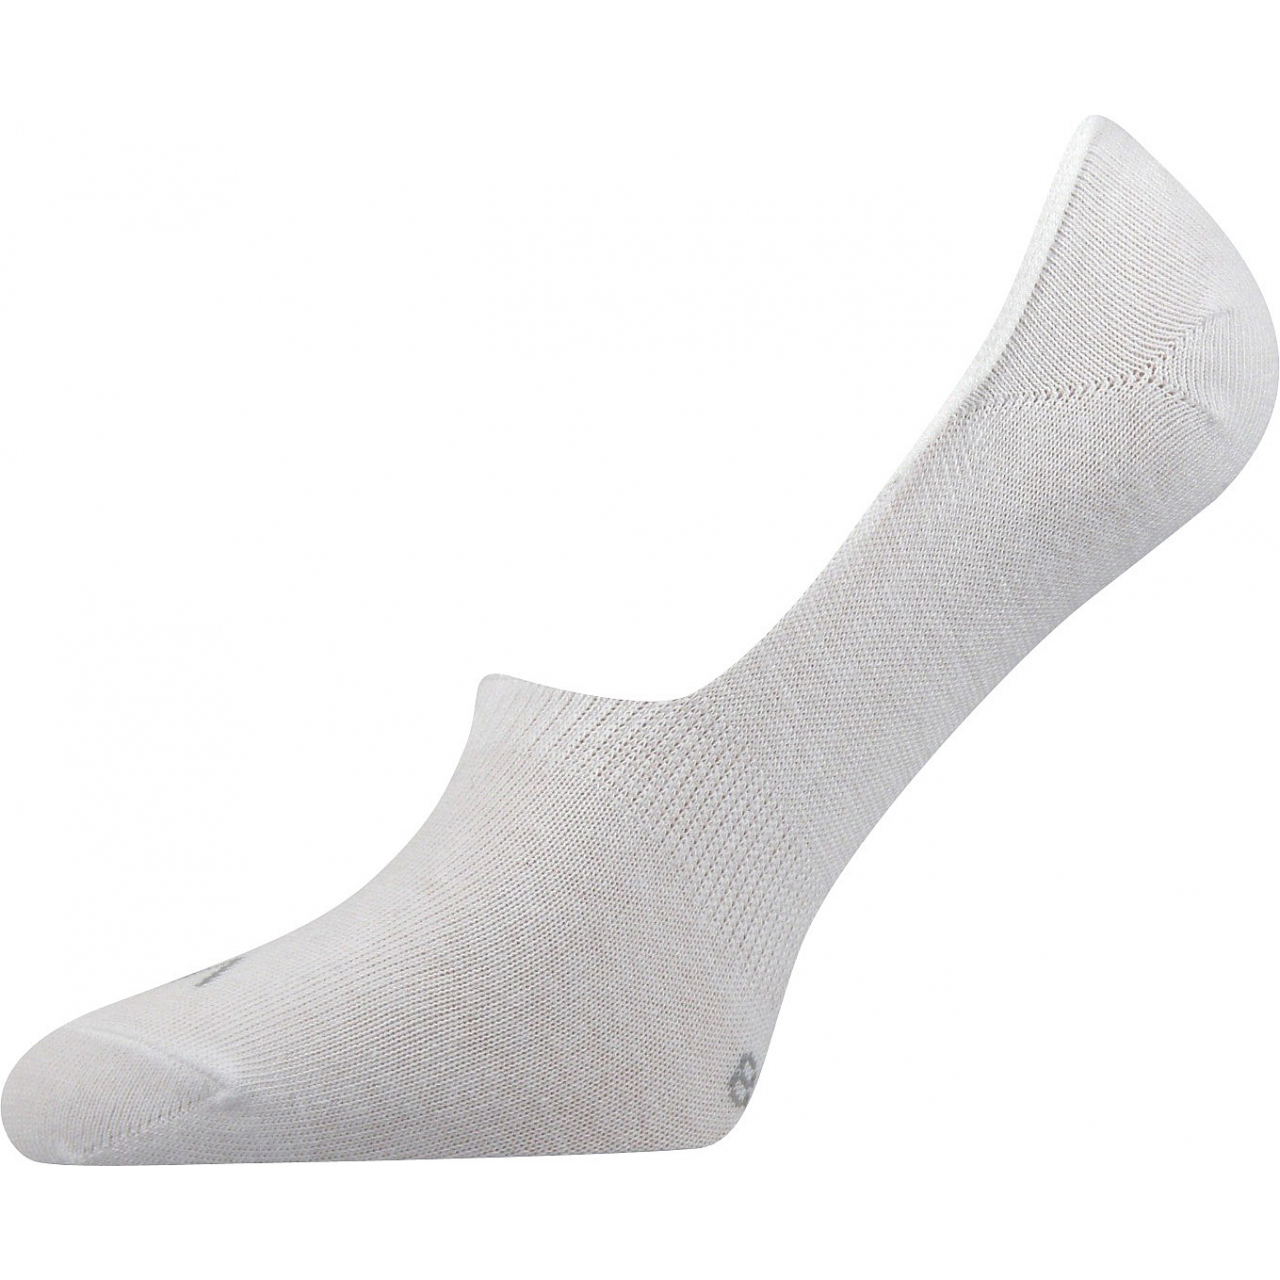 Ponožky unisex Voxx Verti - bílé, 43-46